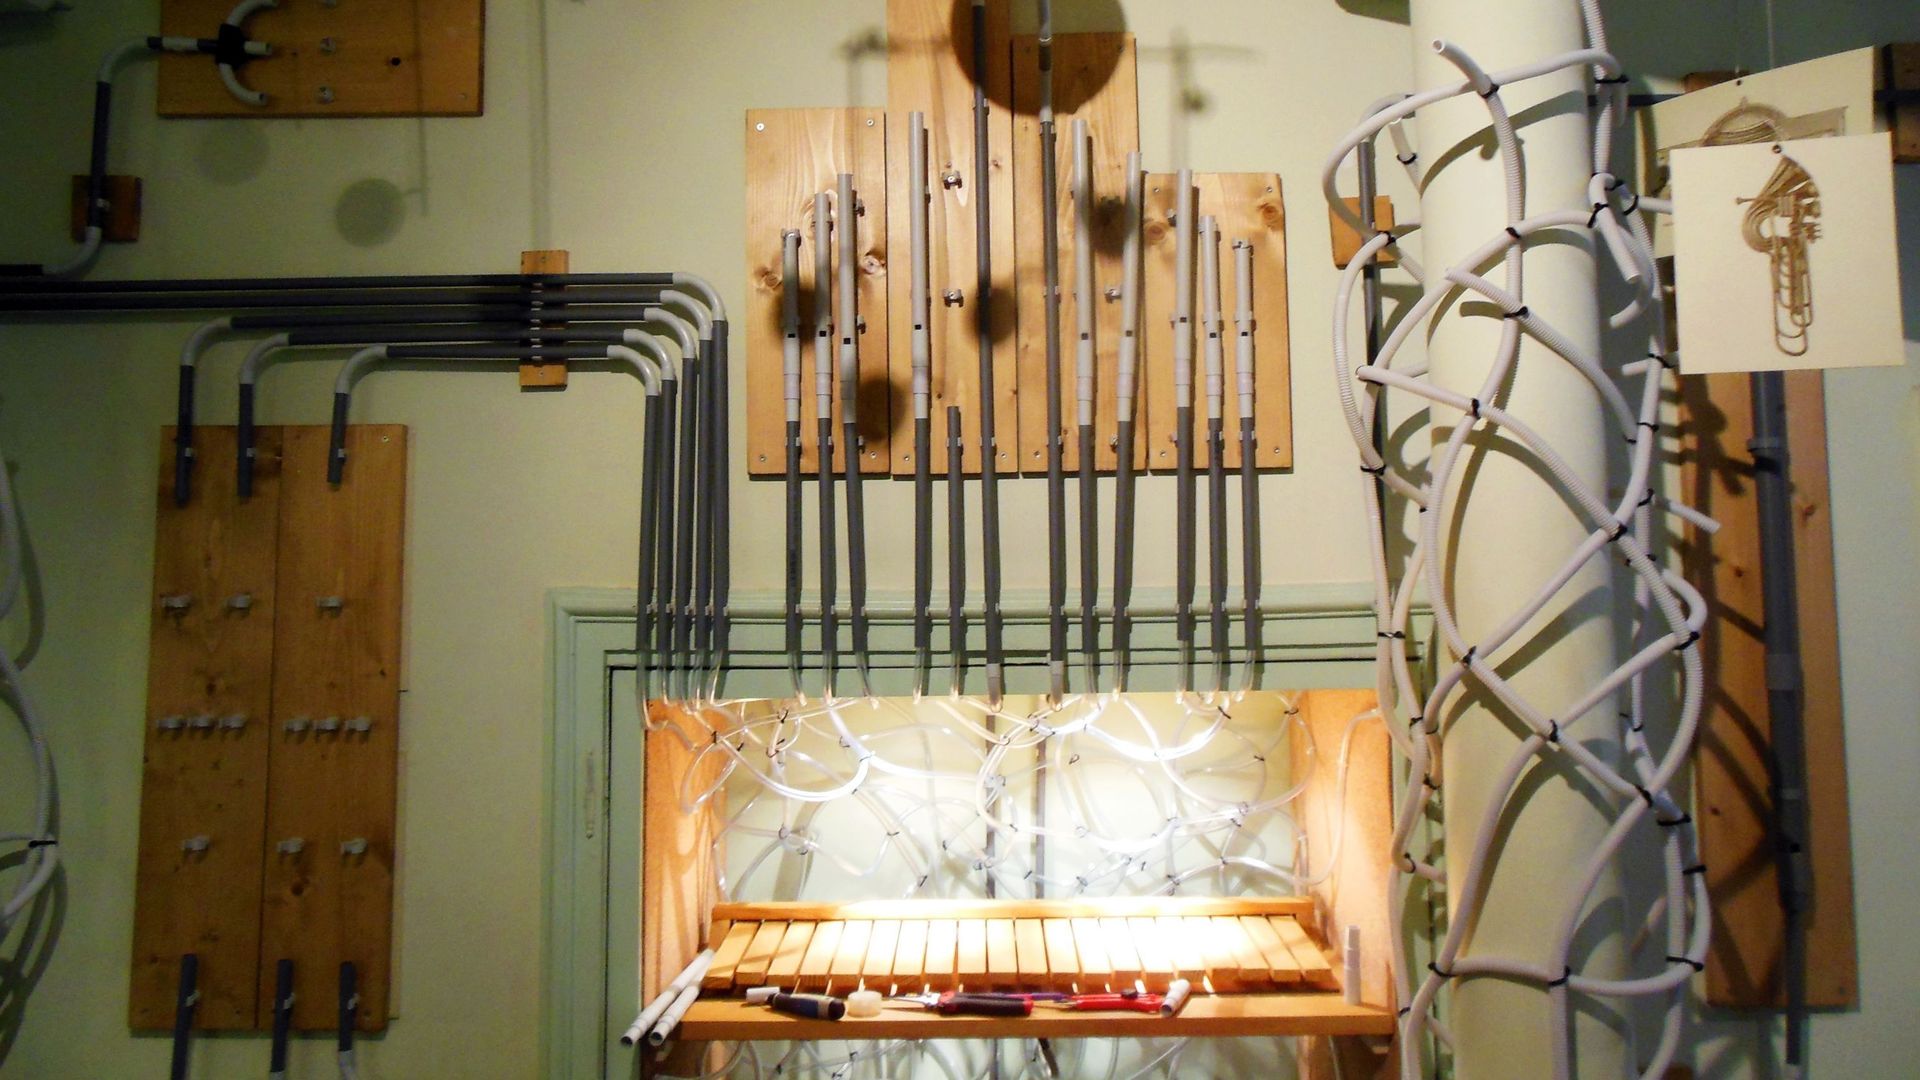 Un des instruments "sauvage" de la Maison de la pataphonie.